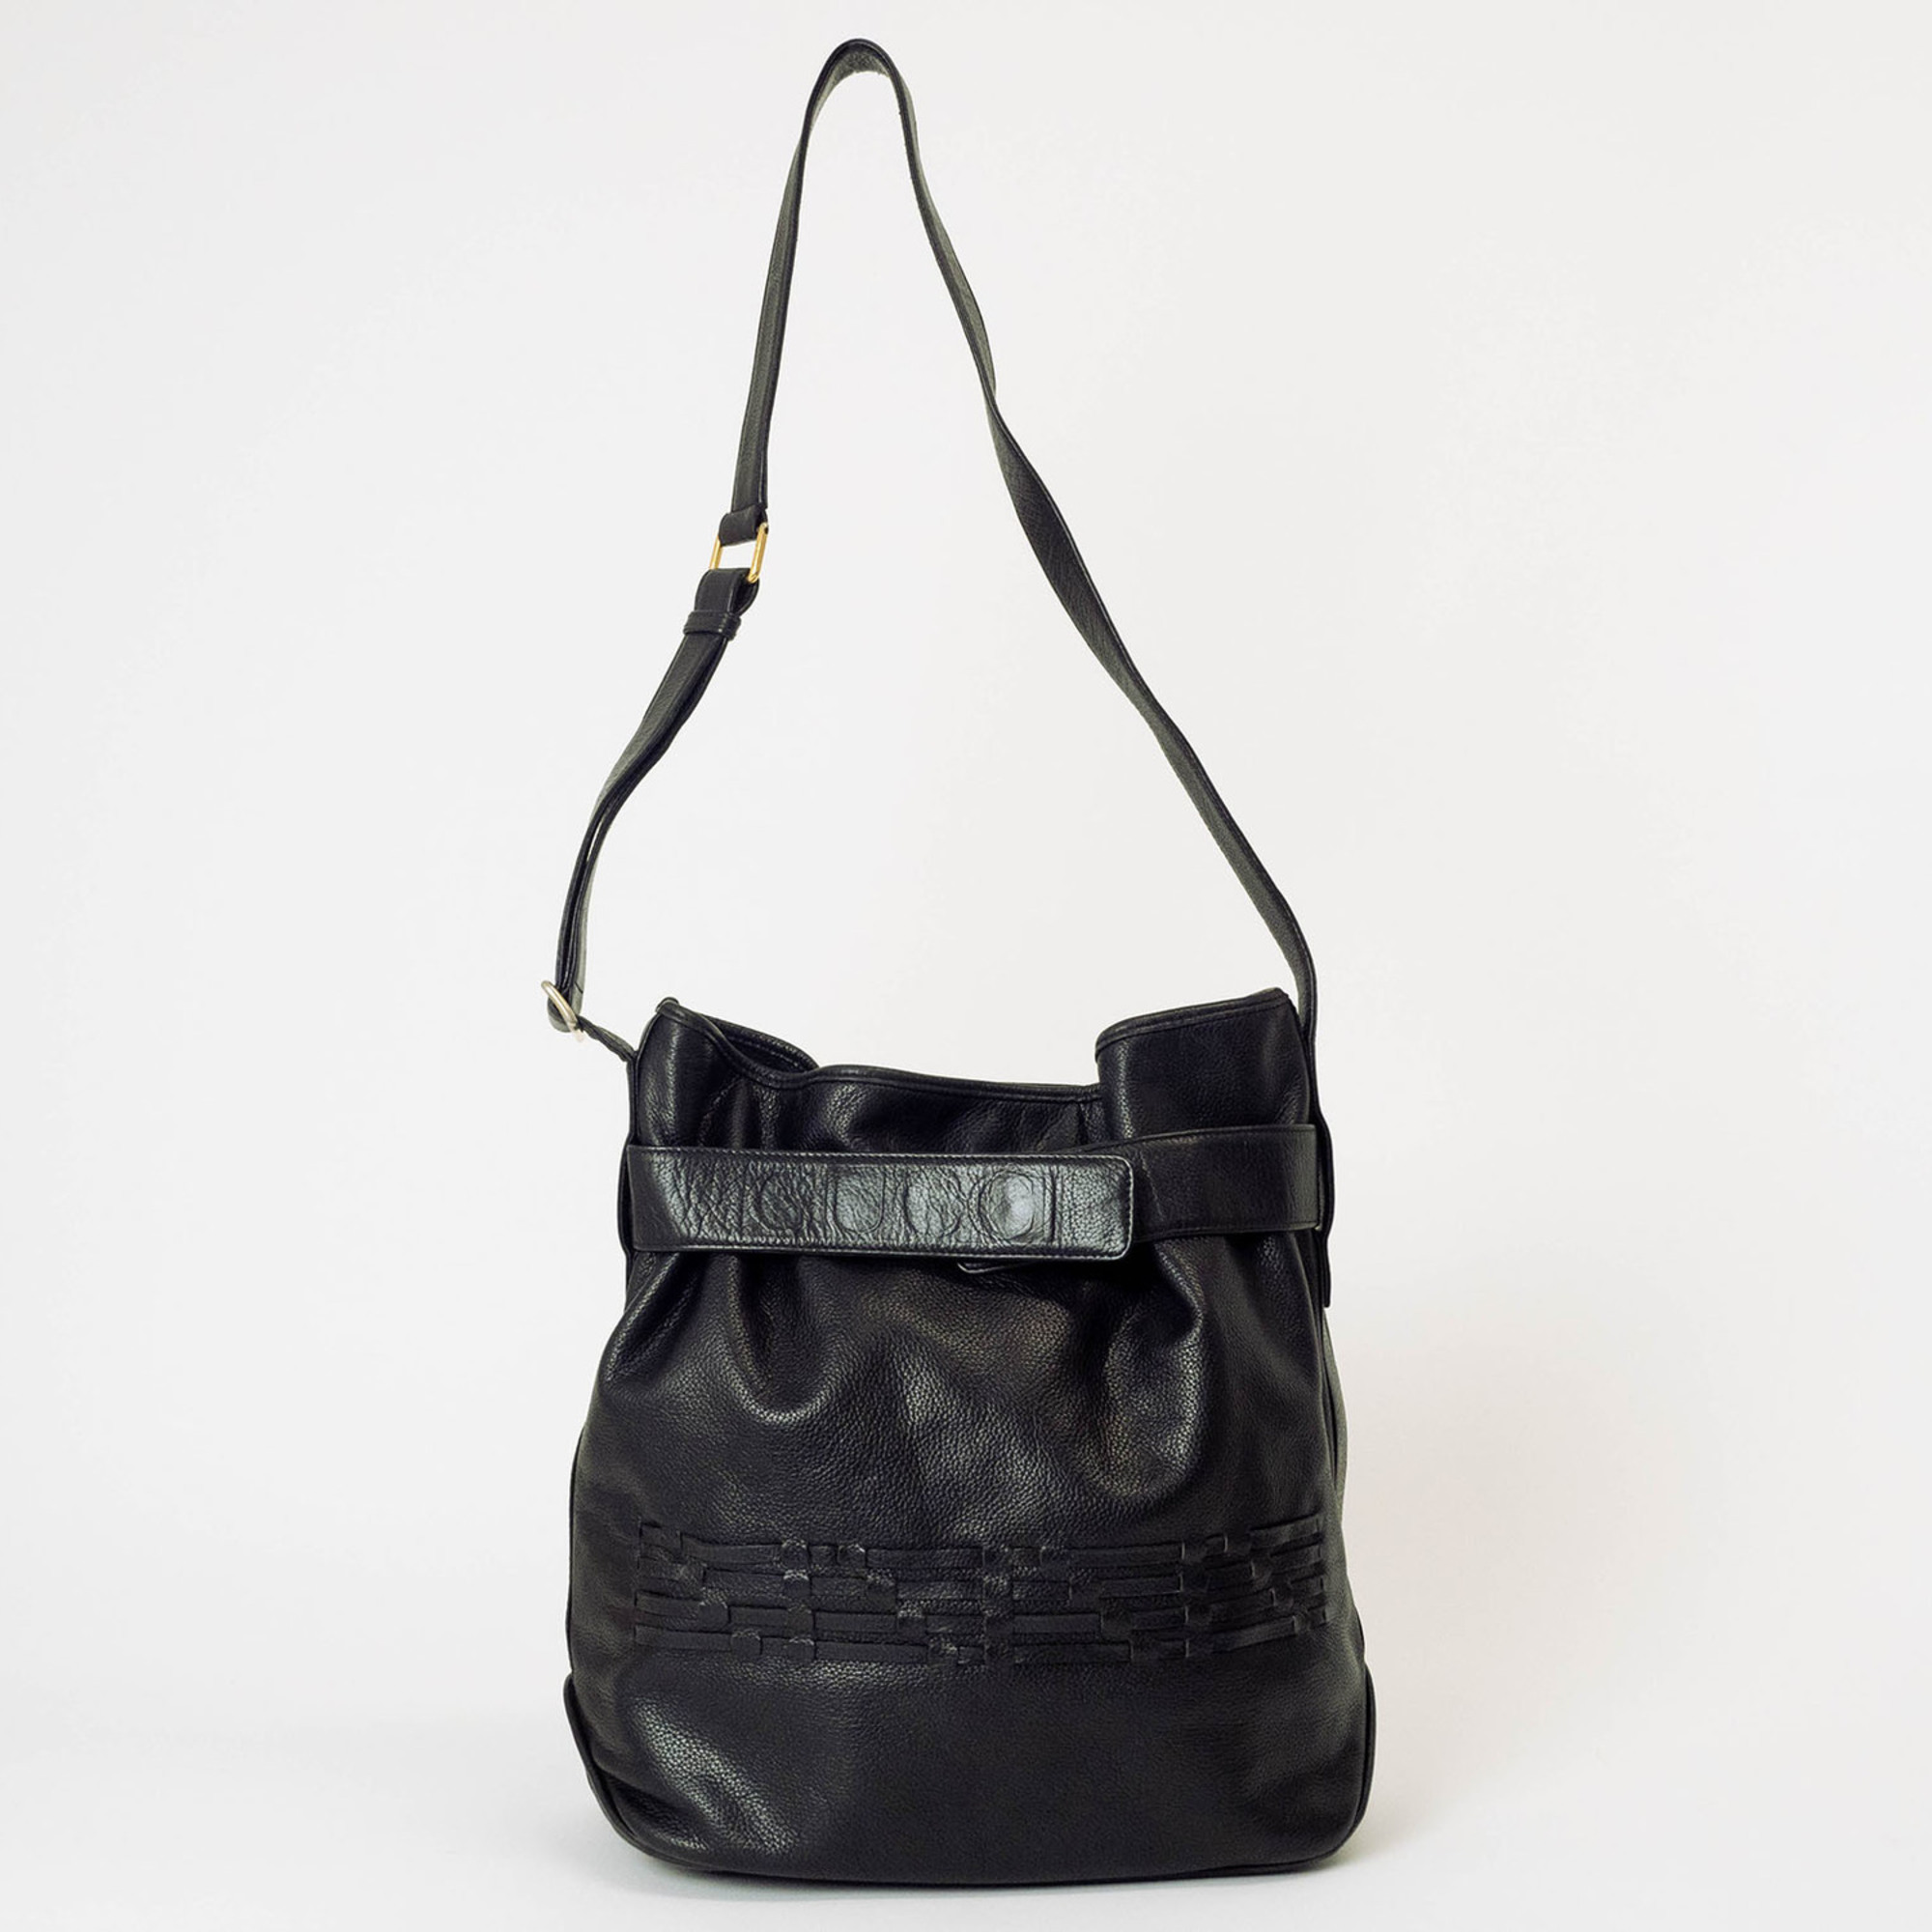 Gucci Old Shoulder Bag Leather Black Women's Bucket Cylinder Crest Engraved GUCCI